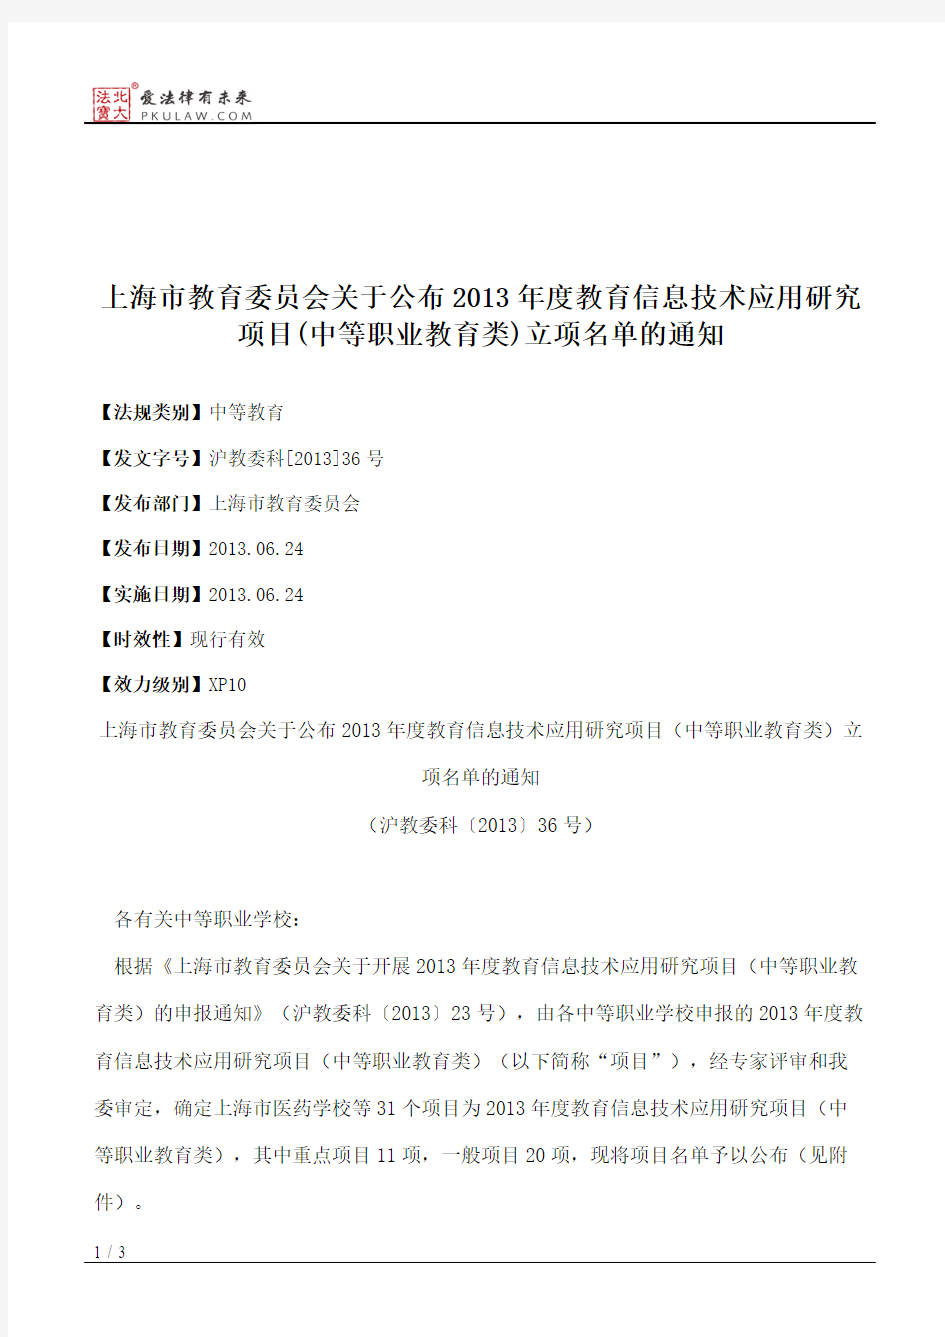 上海市教育委员会关于公布2013年度教育信息技术应用研究项目(中等